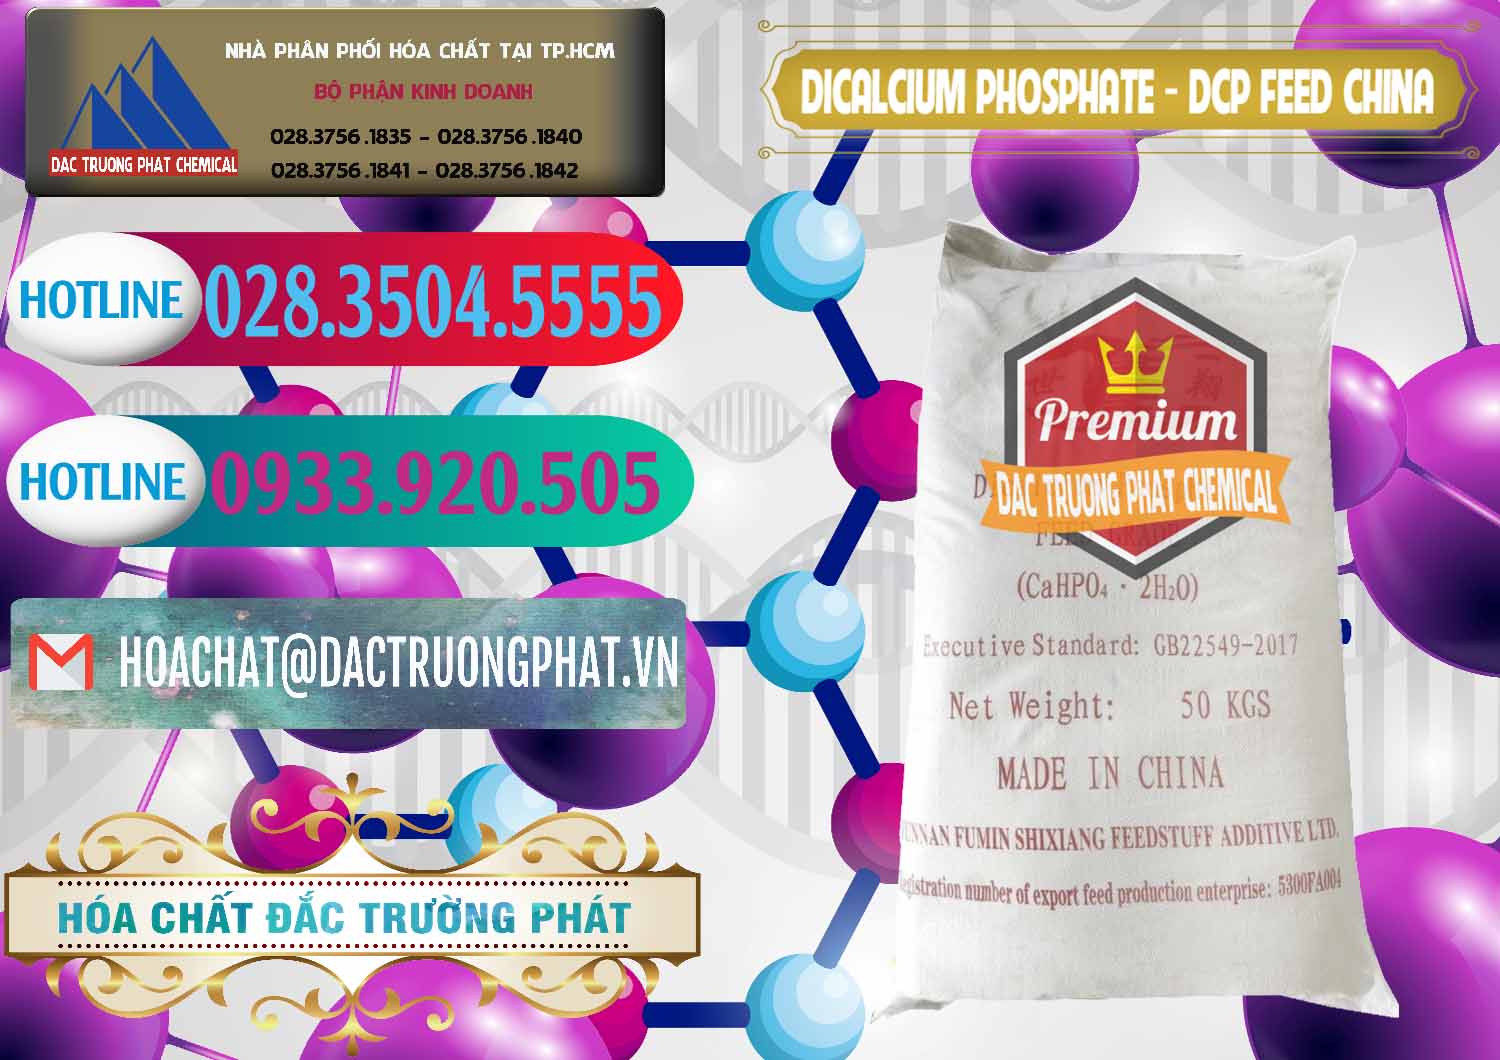 Nơi chuyên bán & cung ứng Dicalcium Phosphate - DCP Feed Grade Trung Quốc China - 0296 - Cty phân phối ( cung cấp ) hóa chất tại TP.HCM - truongphat.vn